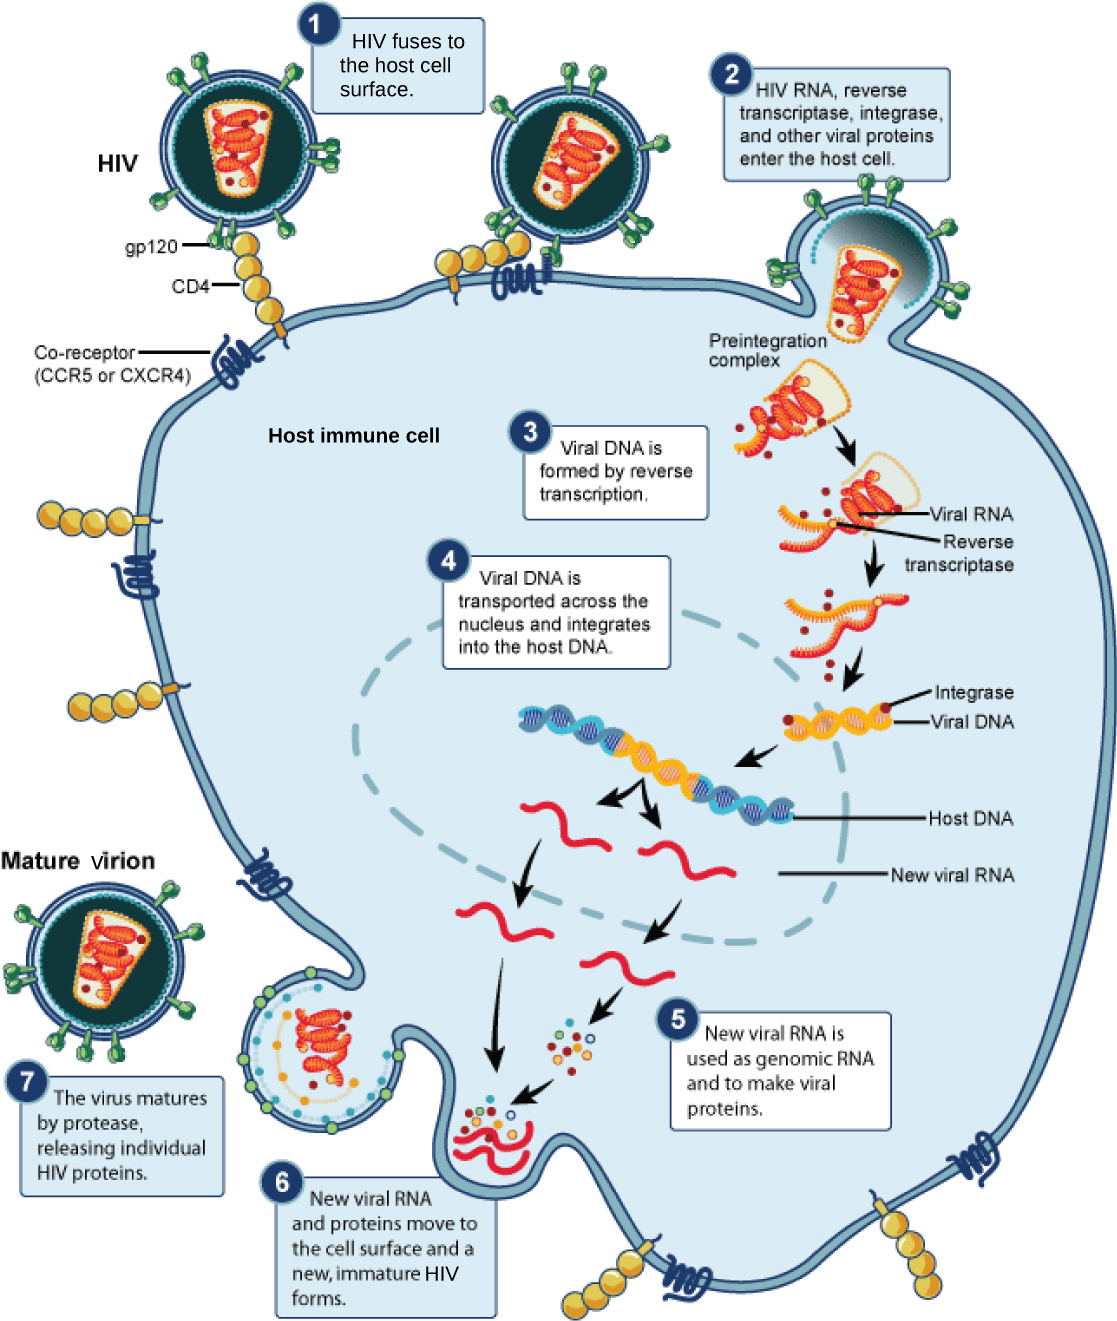 האיור מציג את השלבים במחזור החיים של HIV. בשלב 1, גליקופרוטאינים gp120 במעטפת הנגיפית מתחברים לקולטן CD4 על קרום התא המארח. לאחר מכן, הגליקופרוטאינים מחוברים לקולטן משותף, CCR5 או CXCR4, והמעטפת הנגיפית מתמזגת עם קרום התא. HIV RNA, טרנסקריפטאז הפוך וחלבונים ויראליים אחרים משתחררים לתא המארח. DNA ויראלי נוצר מ- RNA על ידי טרנסקריפטאז הפוך. לאחר מכן מועבר DNA ויראלי על פני הממברנה הגרעינית, שם הוא משתלב ב- DNA המארח. נוצר RNA ויראלי חדש; הוא משמש כ- RNA גנומי ולייצור חלבונים ויראליים. RNA וחלבונים ויראליים חדשים עוברים אל פני התא ונוצר HIV חדש ולא בוגר. הנגיף מתבגר כאשר פרוטאז משחרר חלבוני HIV בודדים.